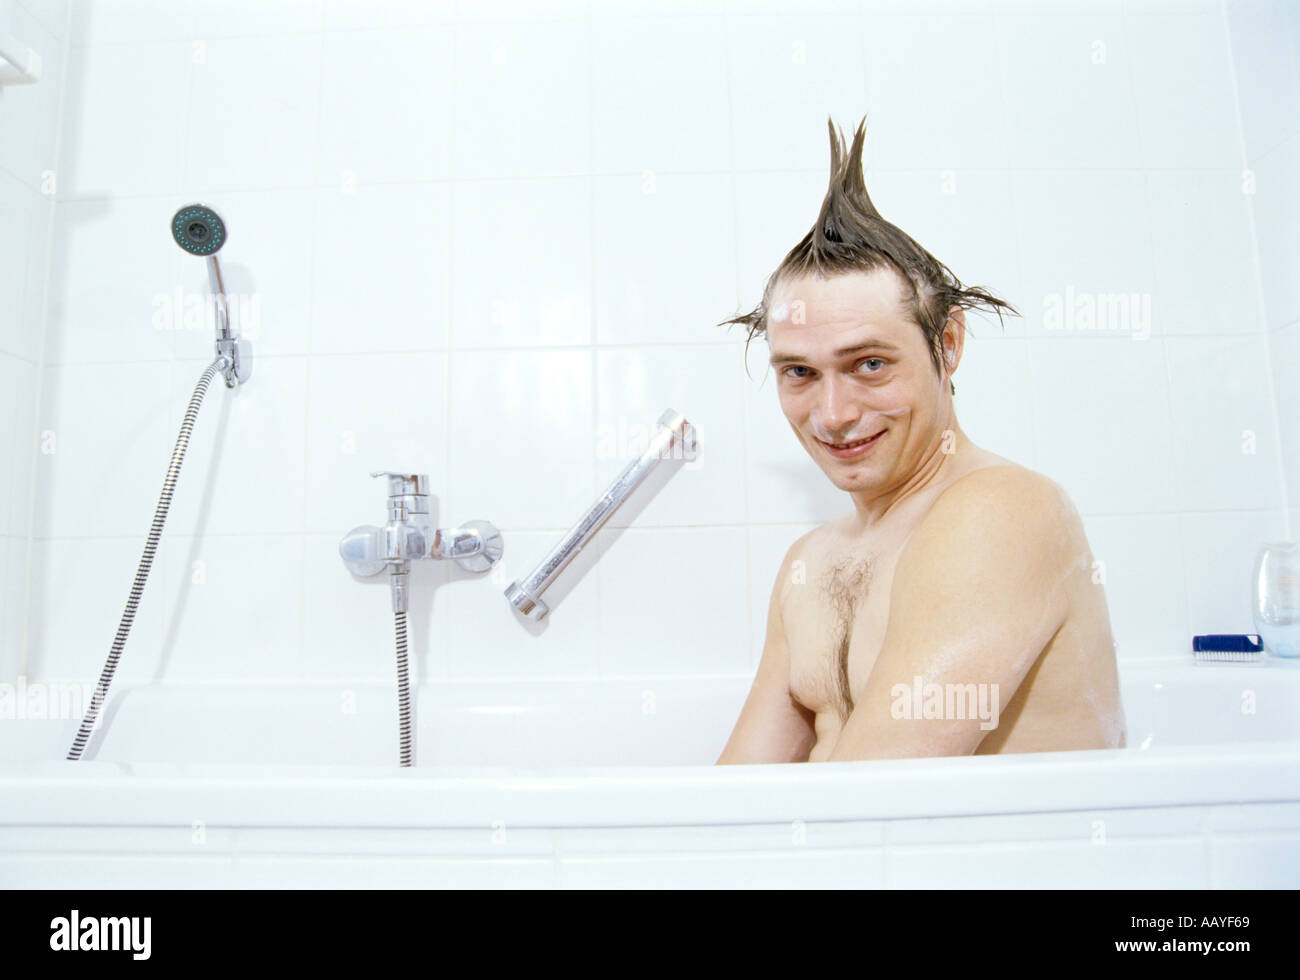 Scène d'une baignoire avec l'homme d'être drôle Banque D'Images